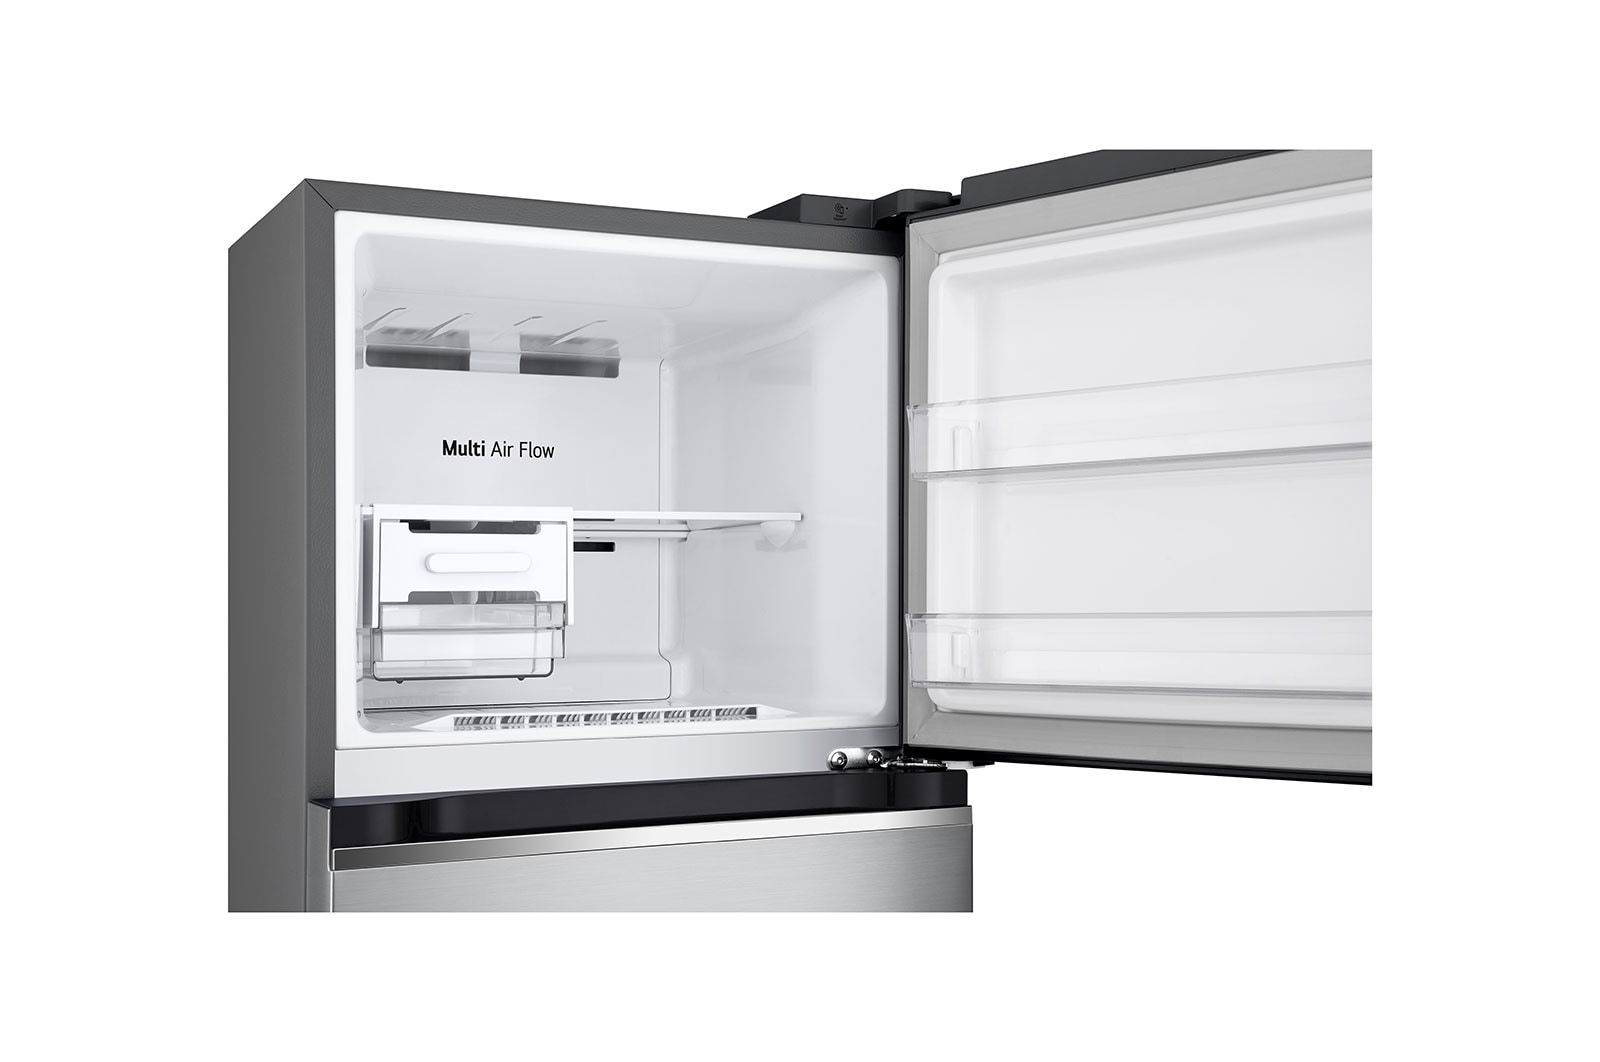 Tủ lạnh LG Inverter 243L GV-B242PS